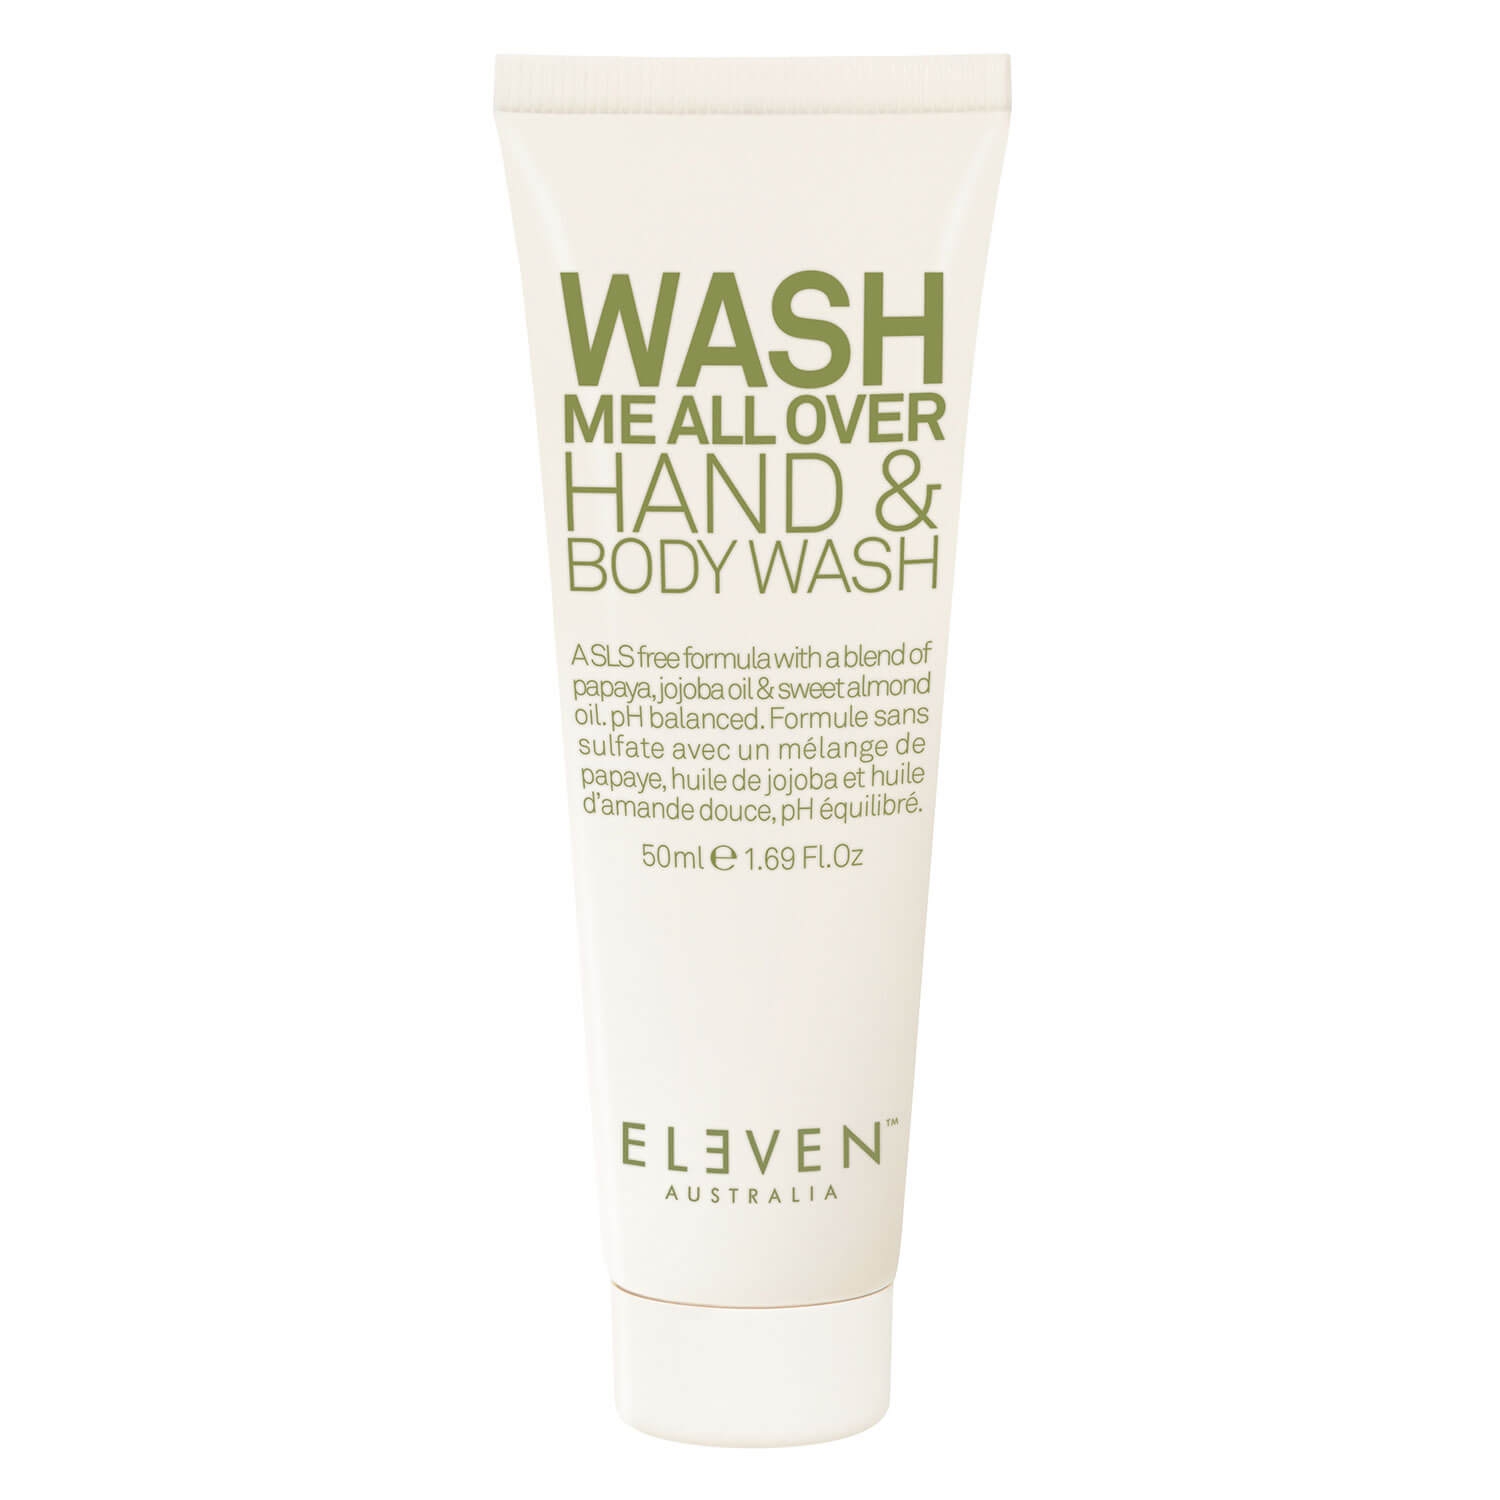 Produktbild von ELEVEN Body - Wash Me All Over Hand & Body Wash